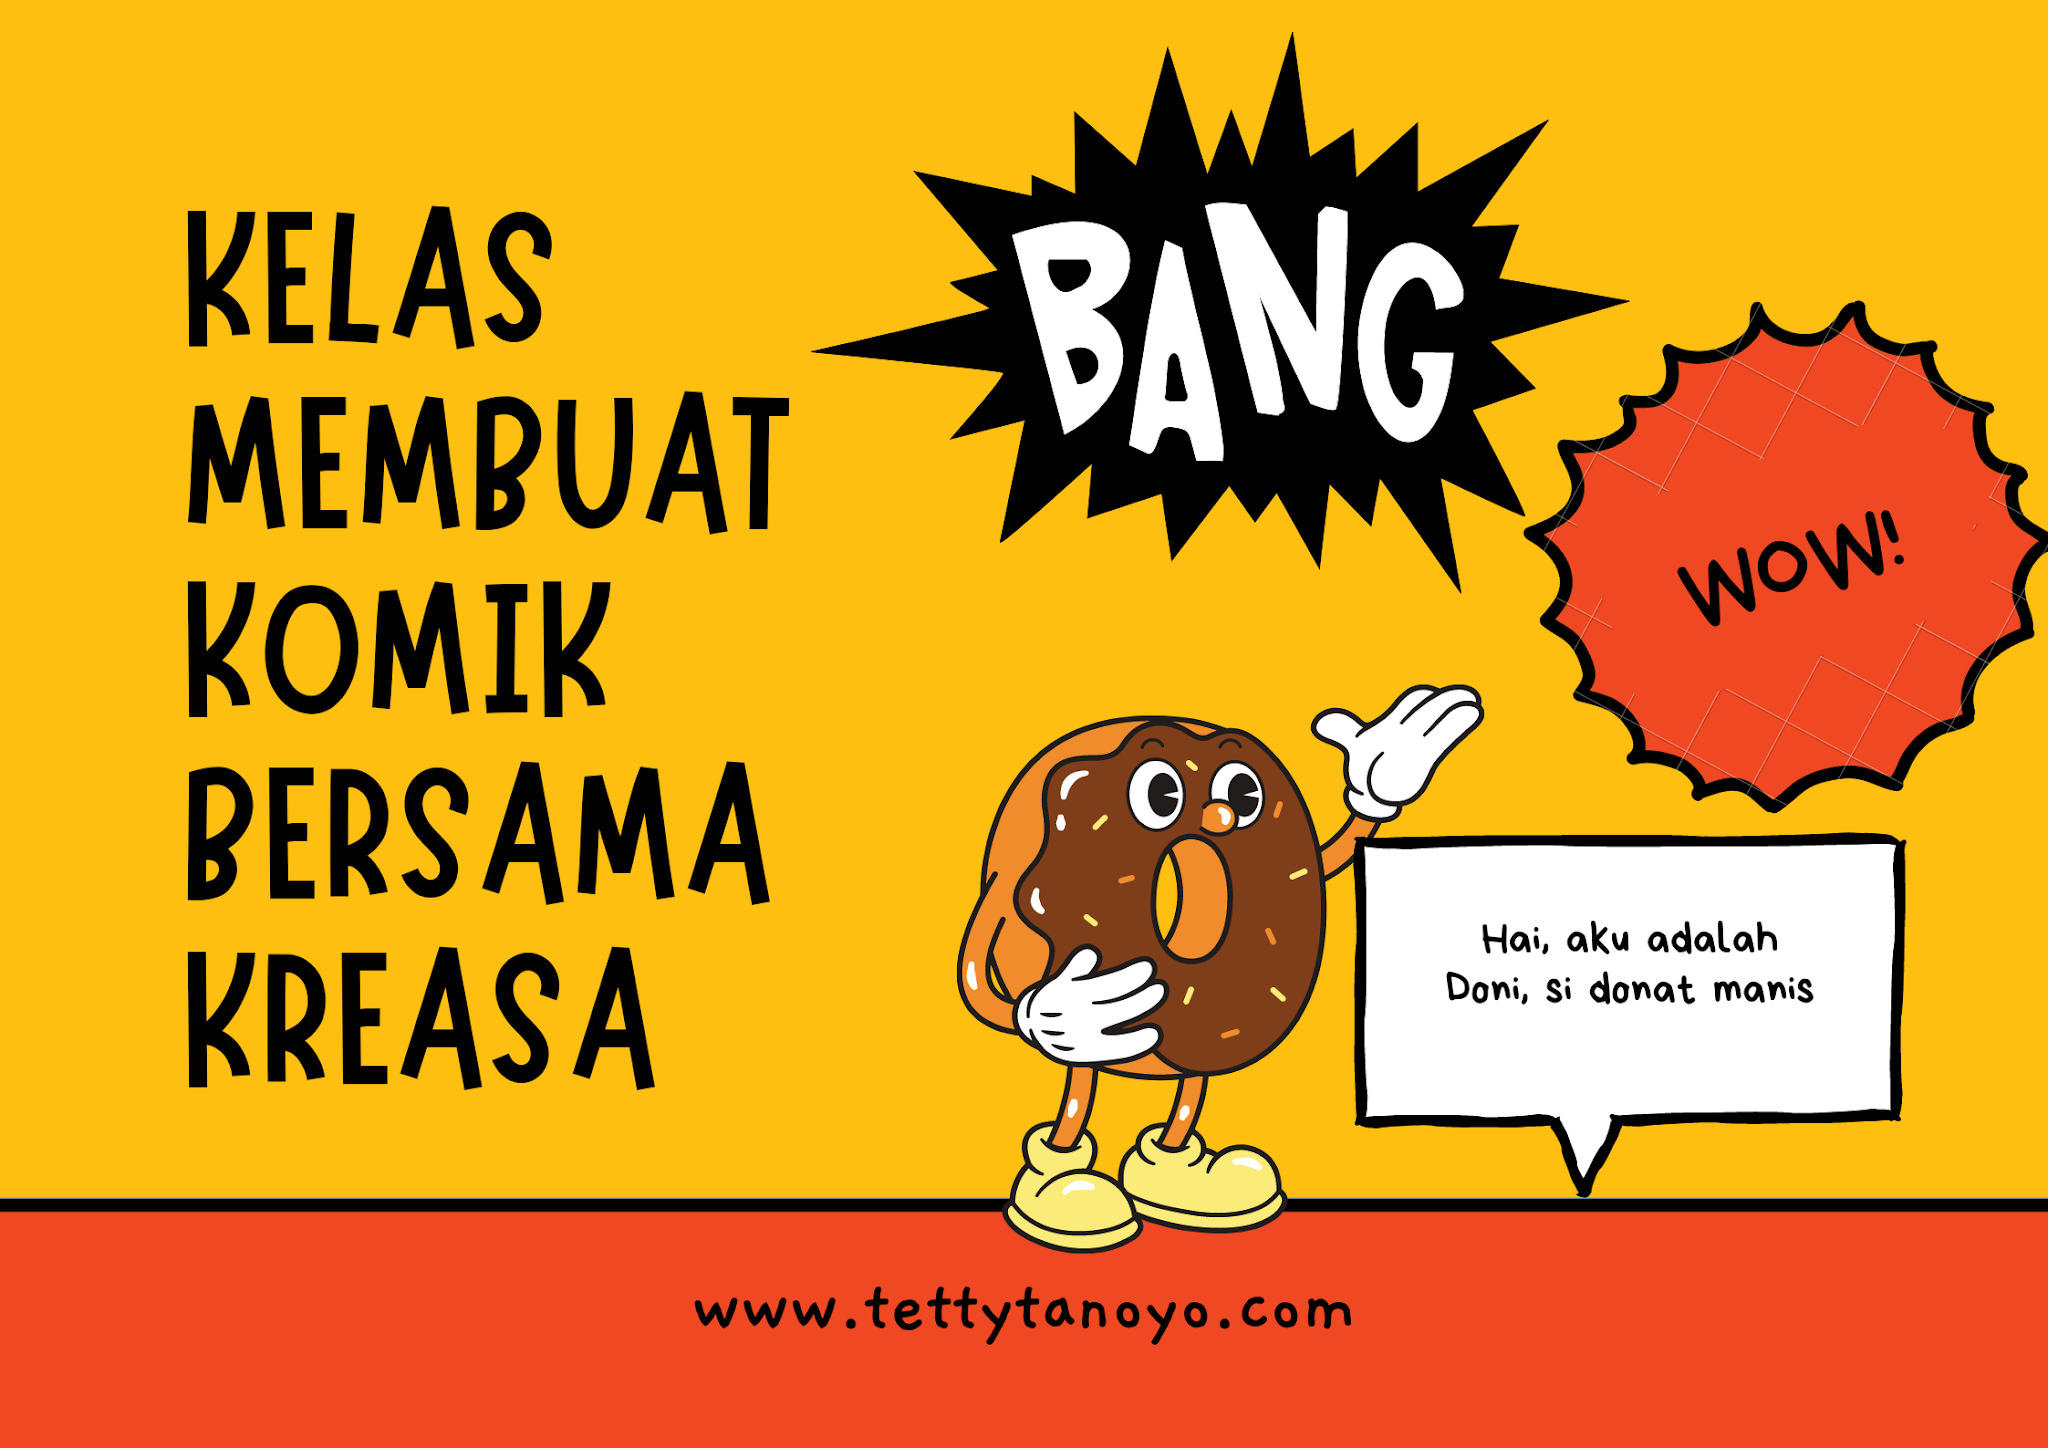 Pengalaman Kifah Ikut Kelas Membuat Komik Bersama Kreasa Family Blogger Indonesia Telling About Daily Life And Family Journey